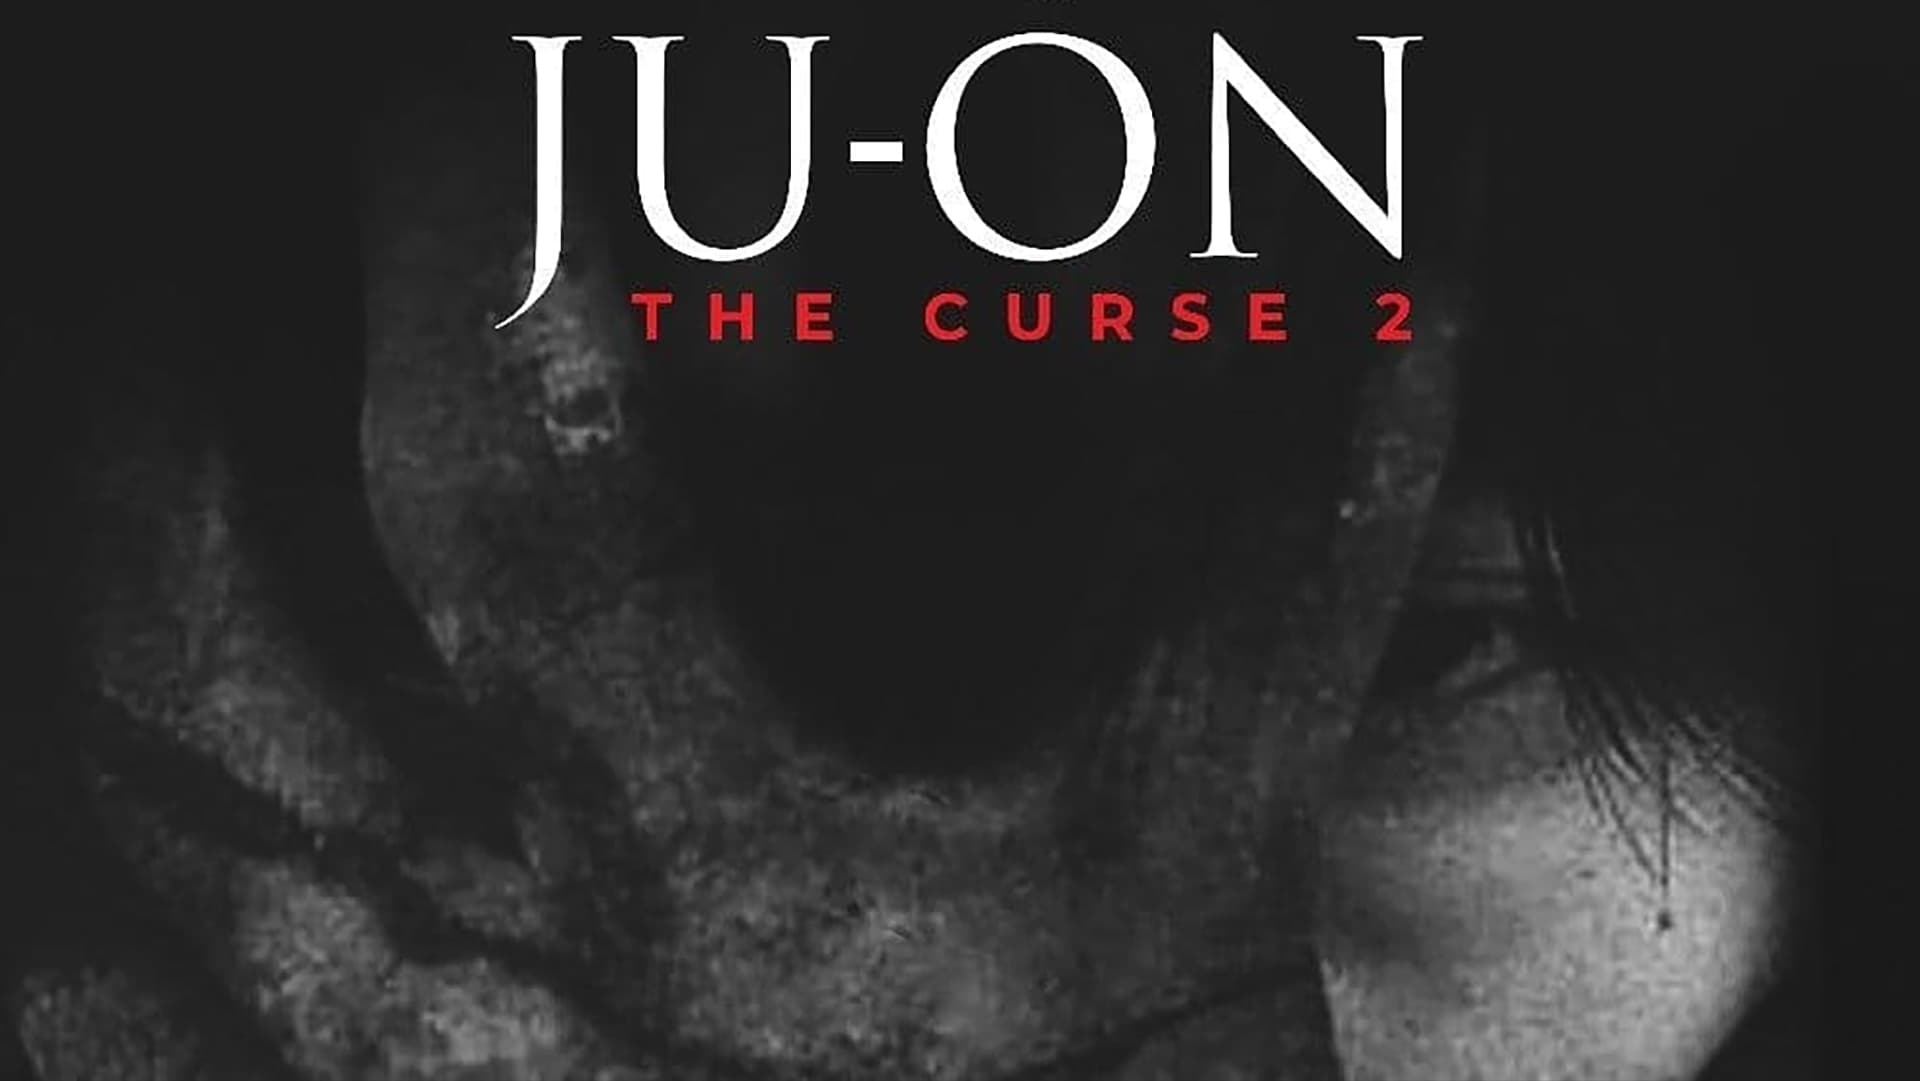 Ju-on: The Curse 2